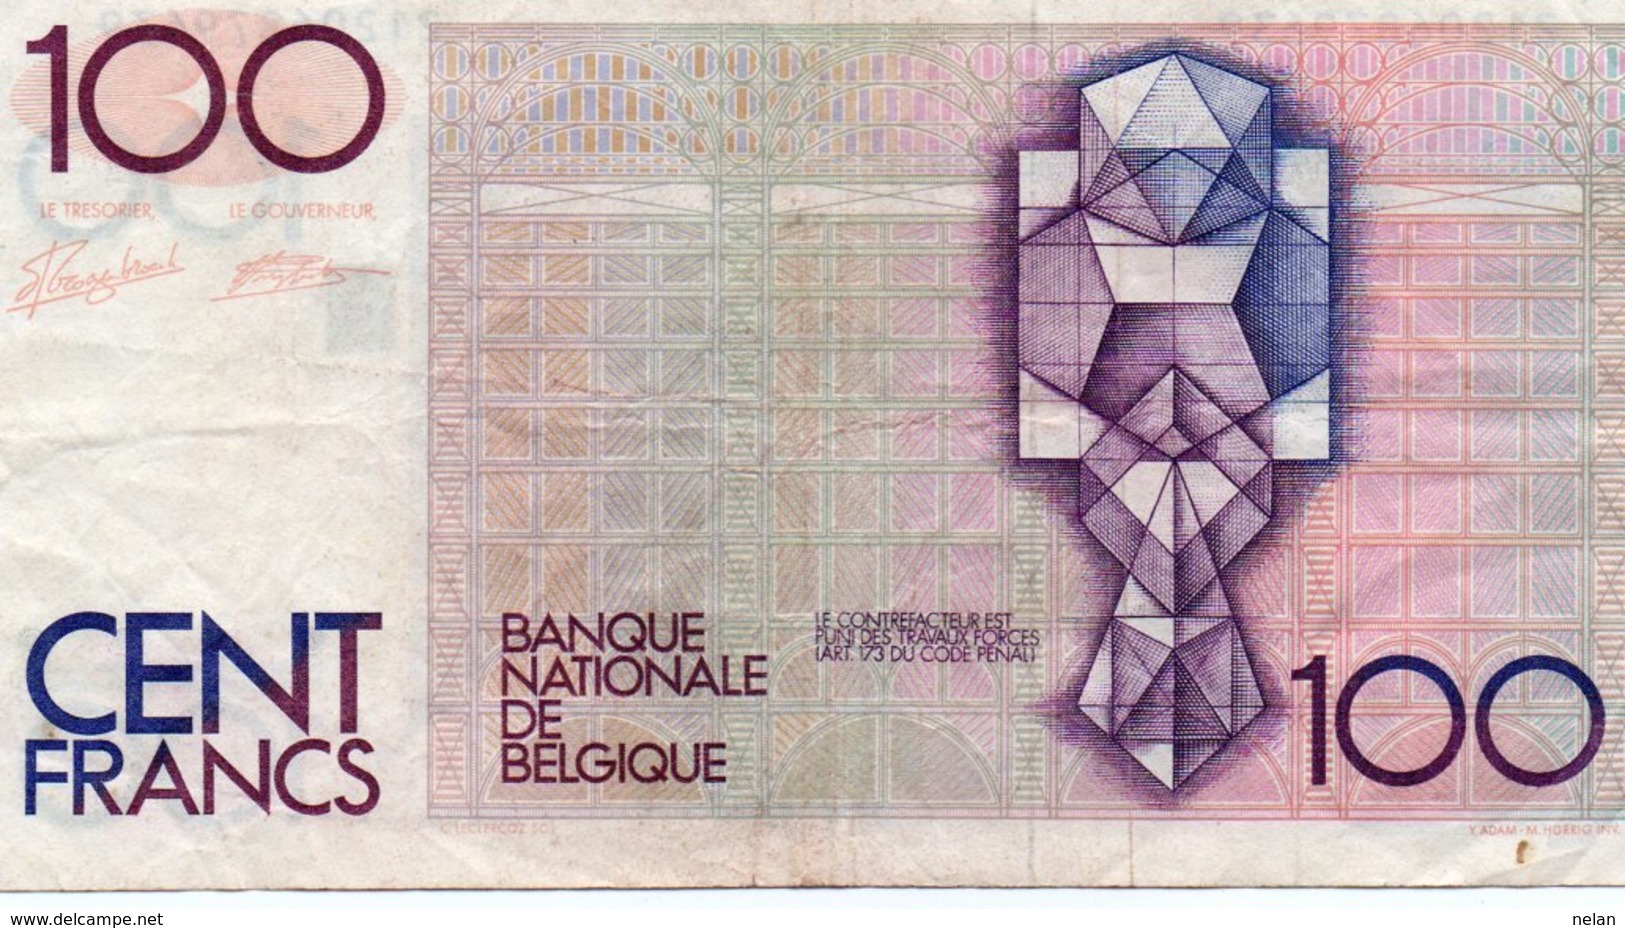 BELGIUM 100 FRANK 1989 P-142a6  VF+ - 100 Francs